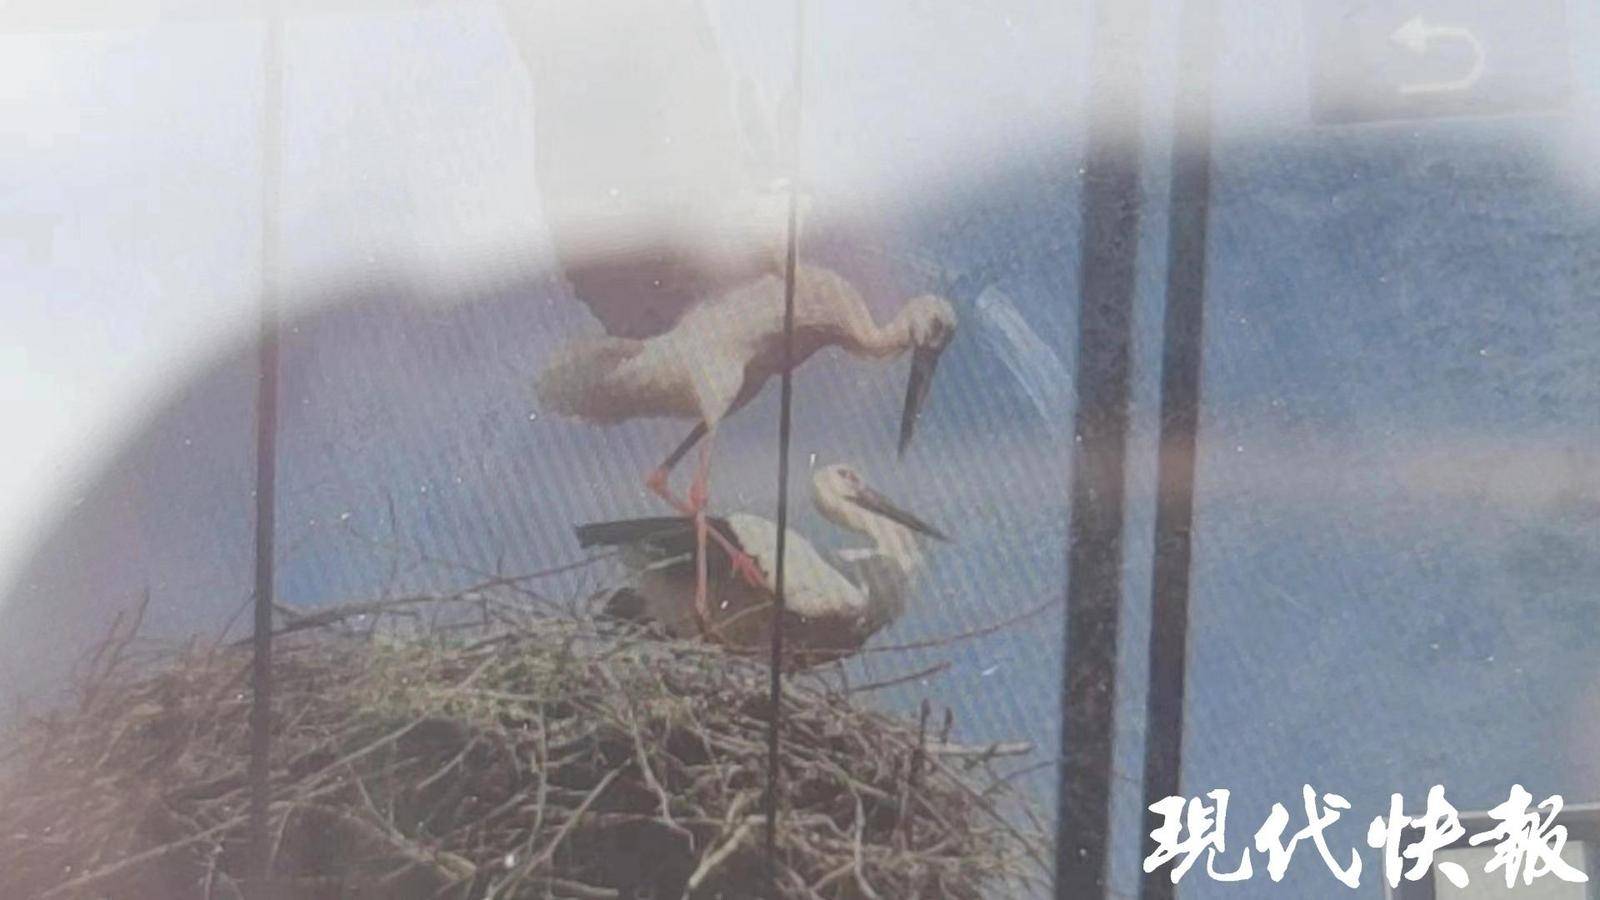 专家呼吁不要让观鸟变伤鸟 东方白鹳疑遭无人机绞断双腿后死亡